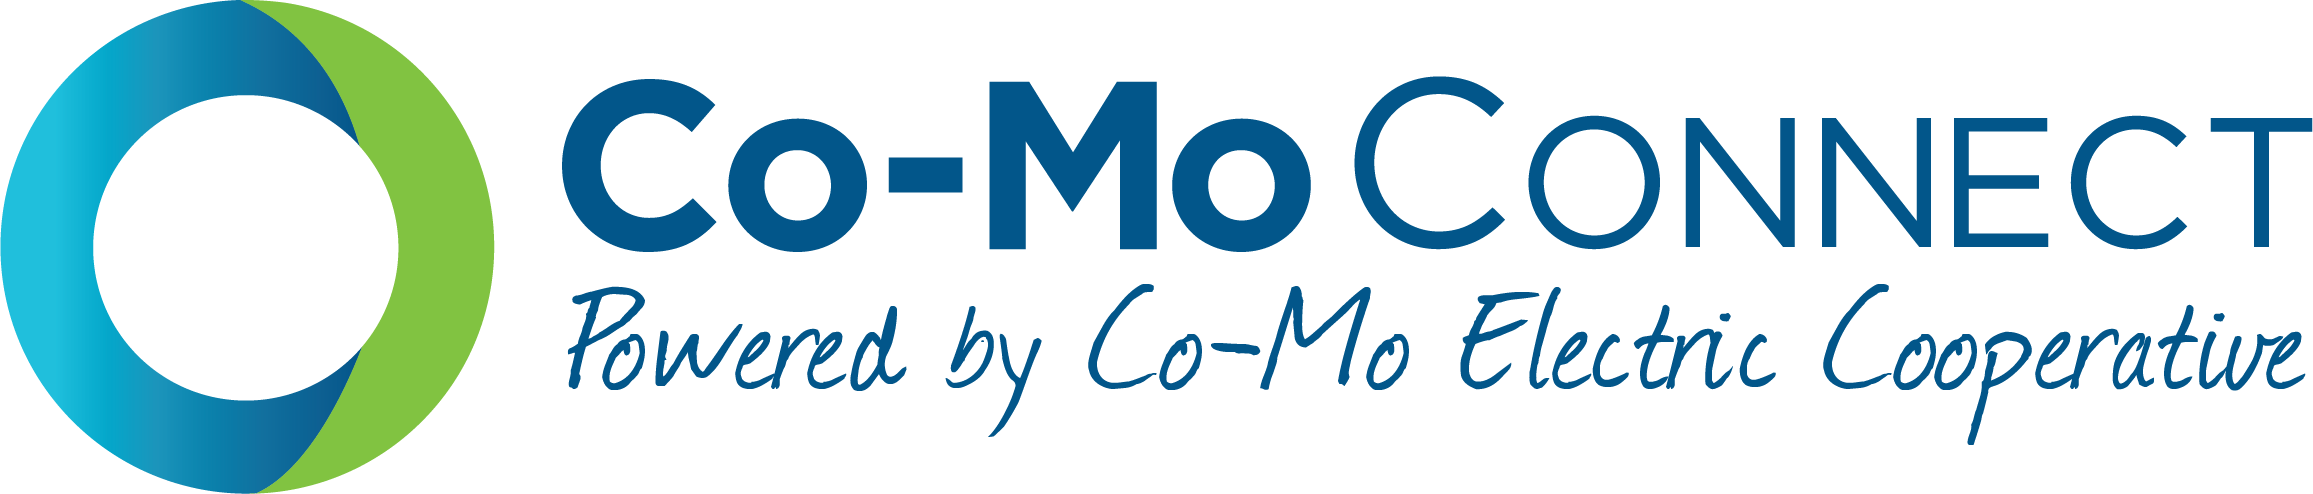 co-mo connect logo